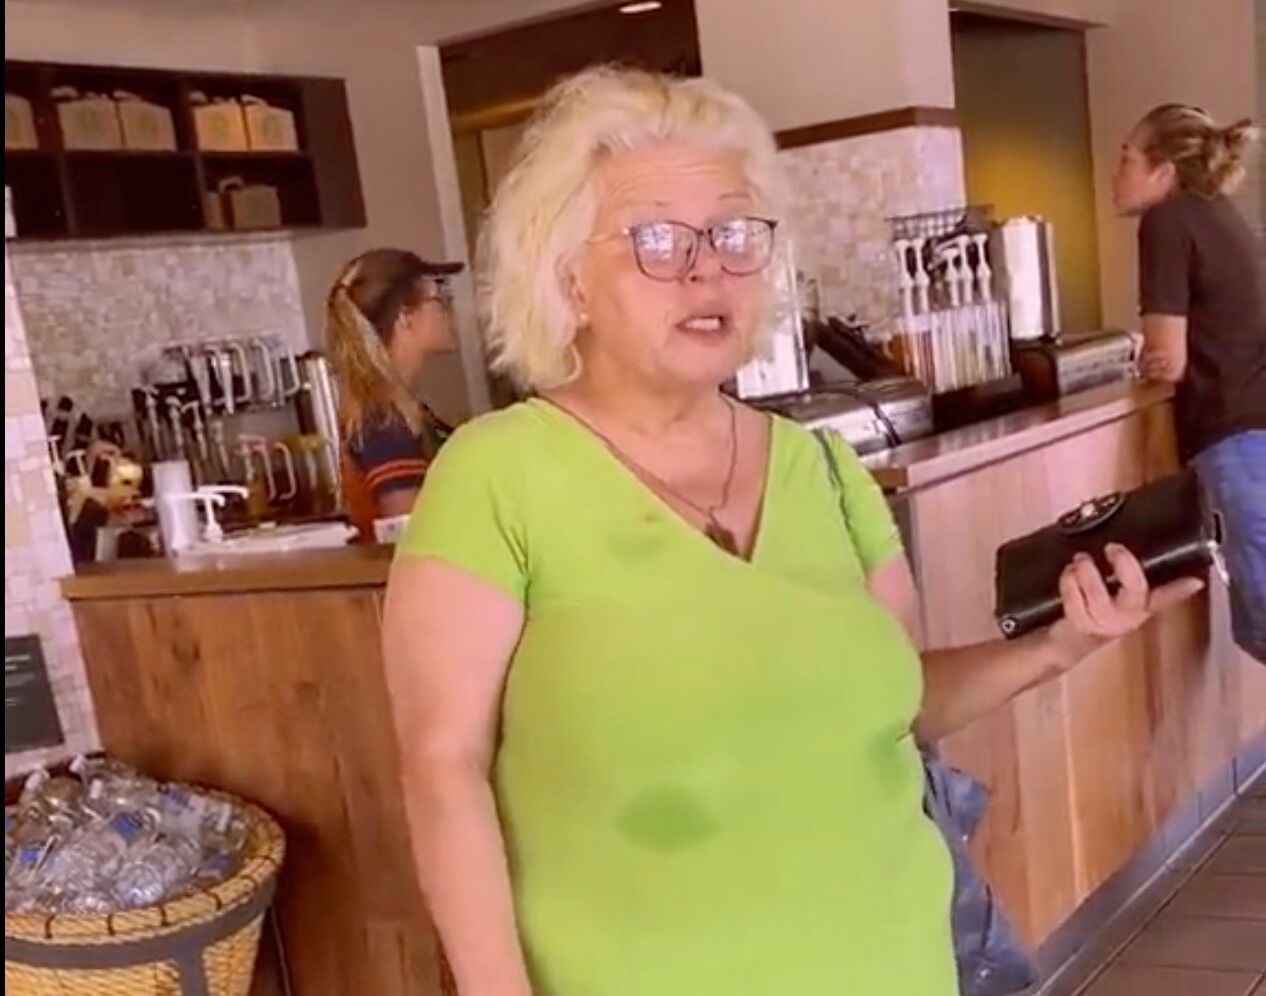 Woman hurls vile slurs at queer couple in Starbucks